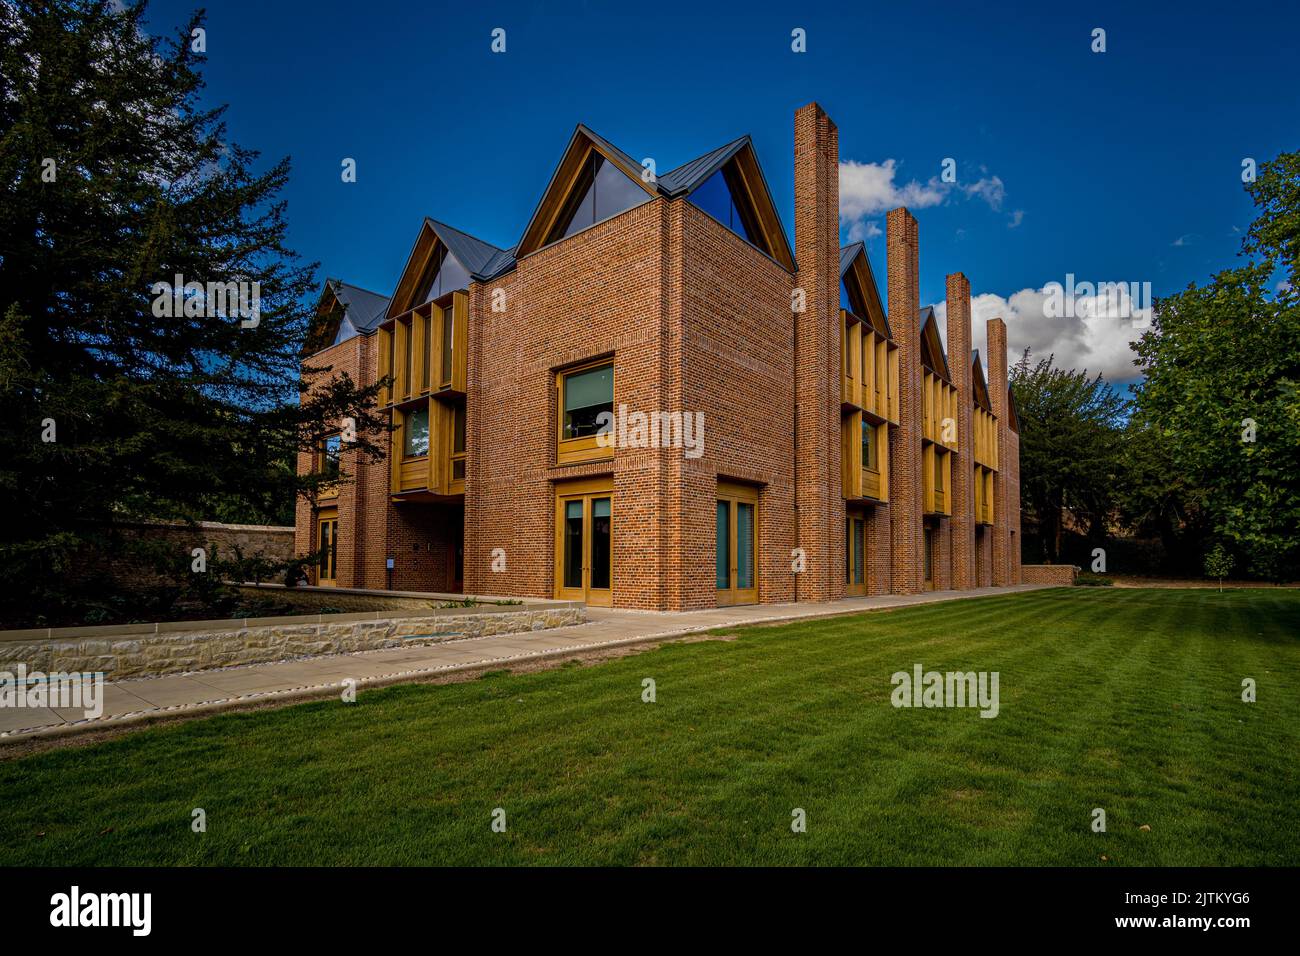 La Nouvelle bibliothèque du Collège Magdalene, qui fait partie de l'Université de Cambridge. Architecte Niall McLaughlin Architects 2022, sélectionné pour le prix Stirling 2022. Banque D'Images